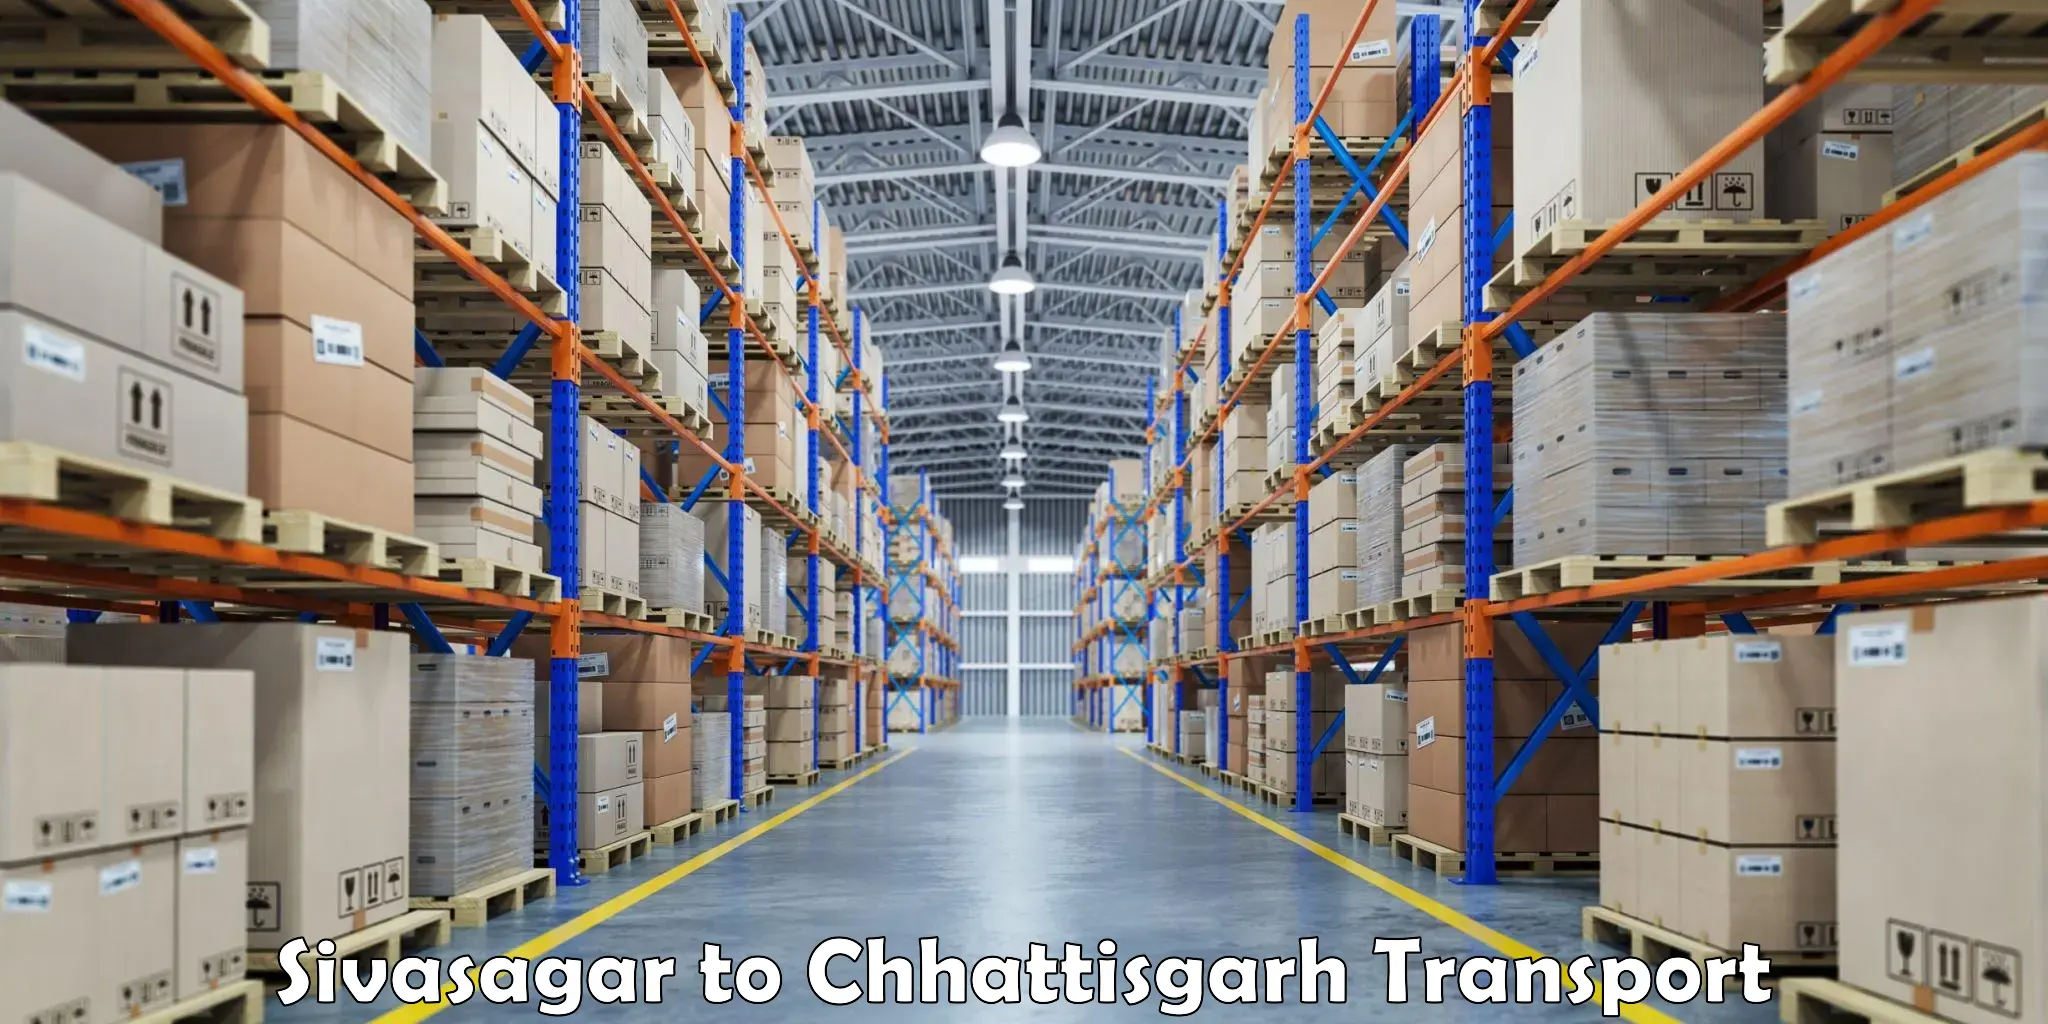 Container transport service Sivasagar to Ramanujganj